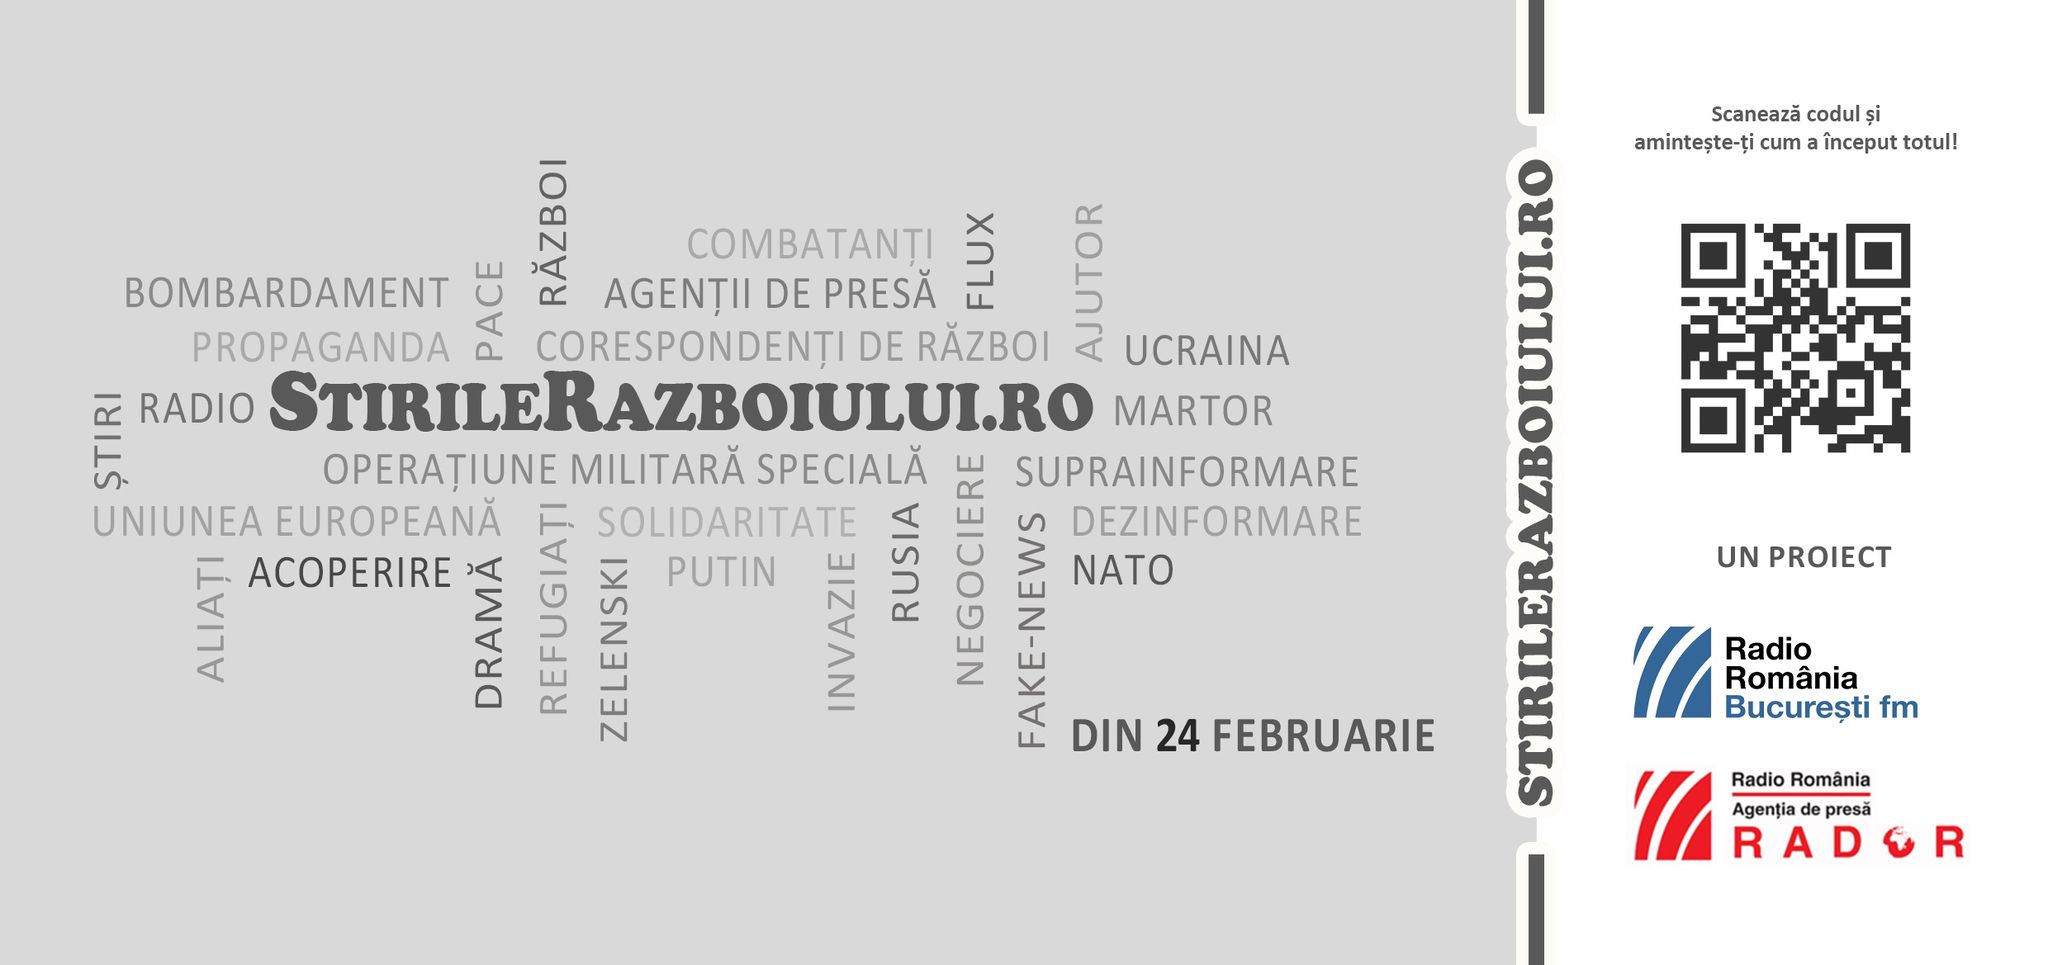 Lansare eveniment București FM – RADOR: stirilerazboiului.ro